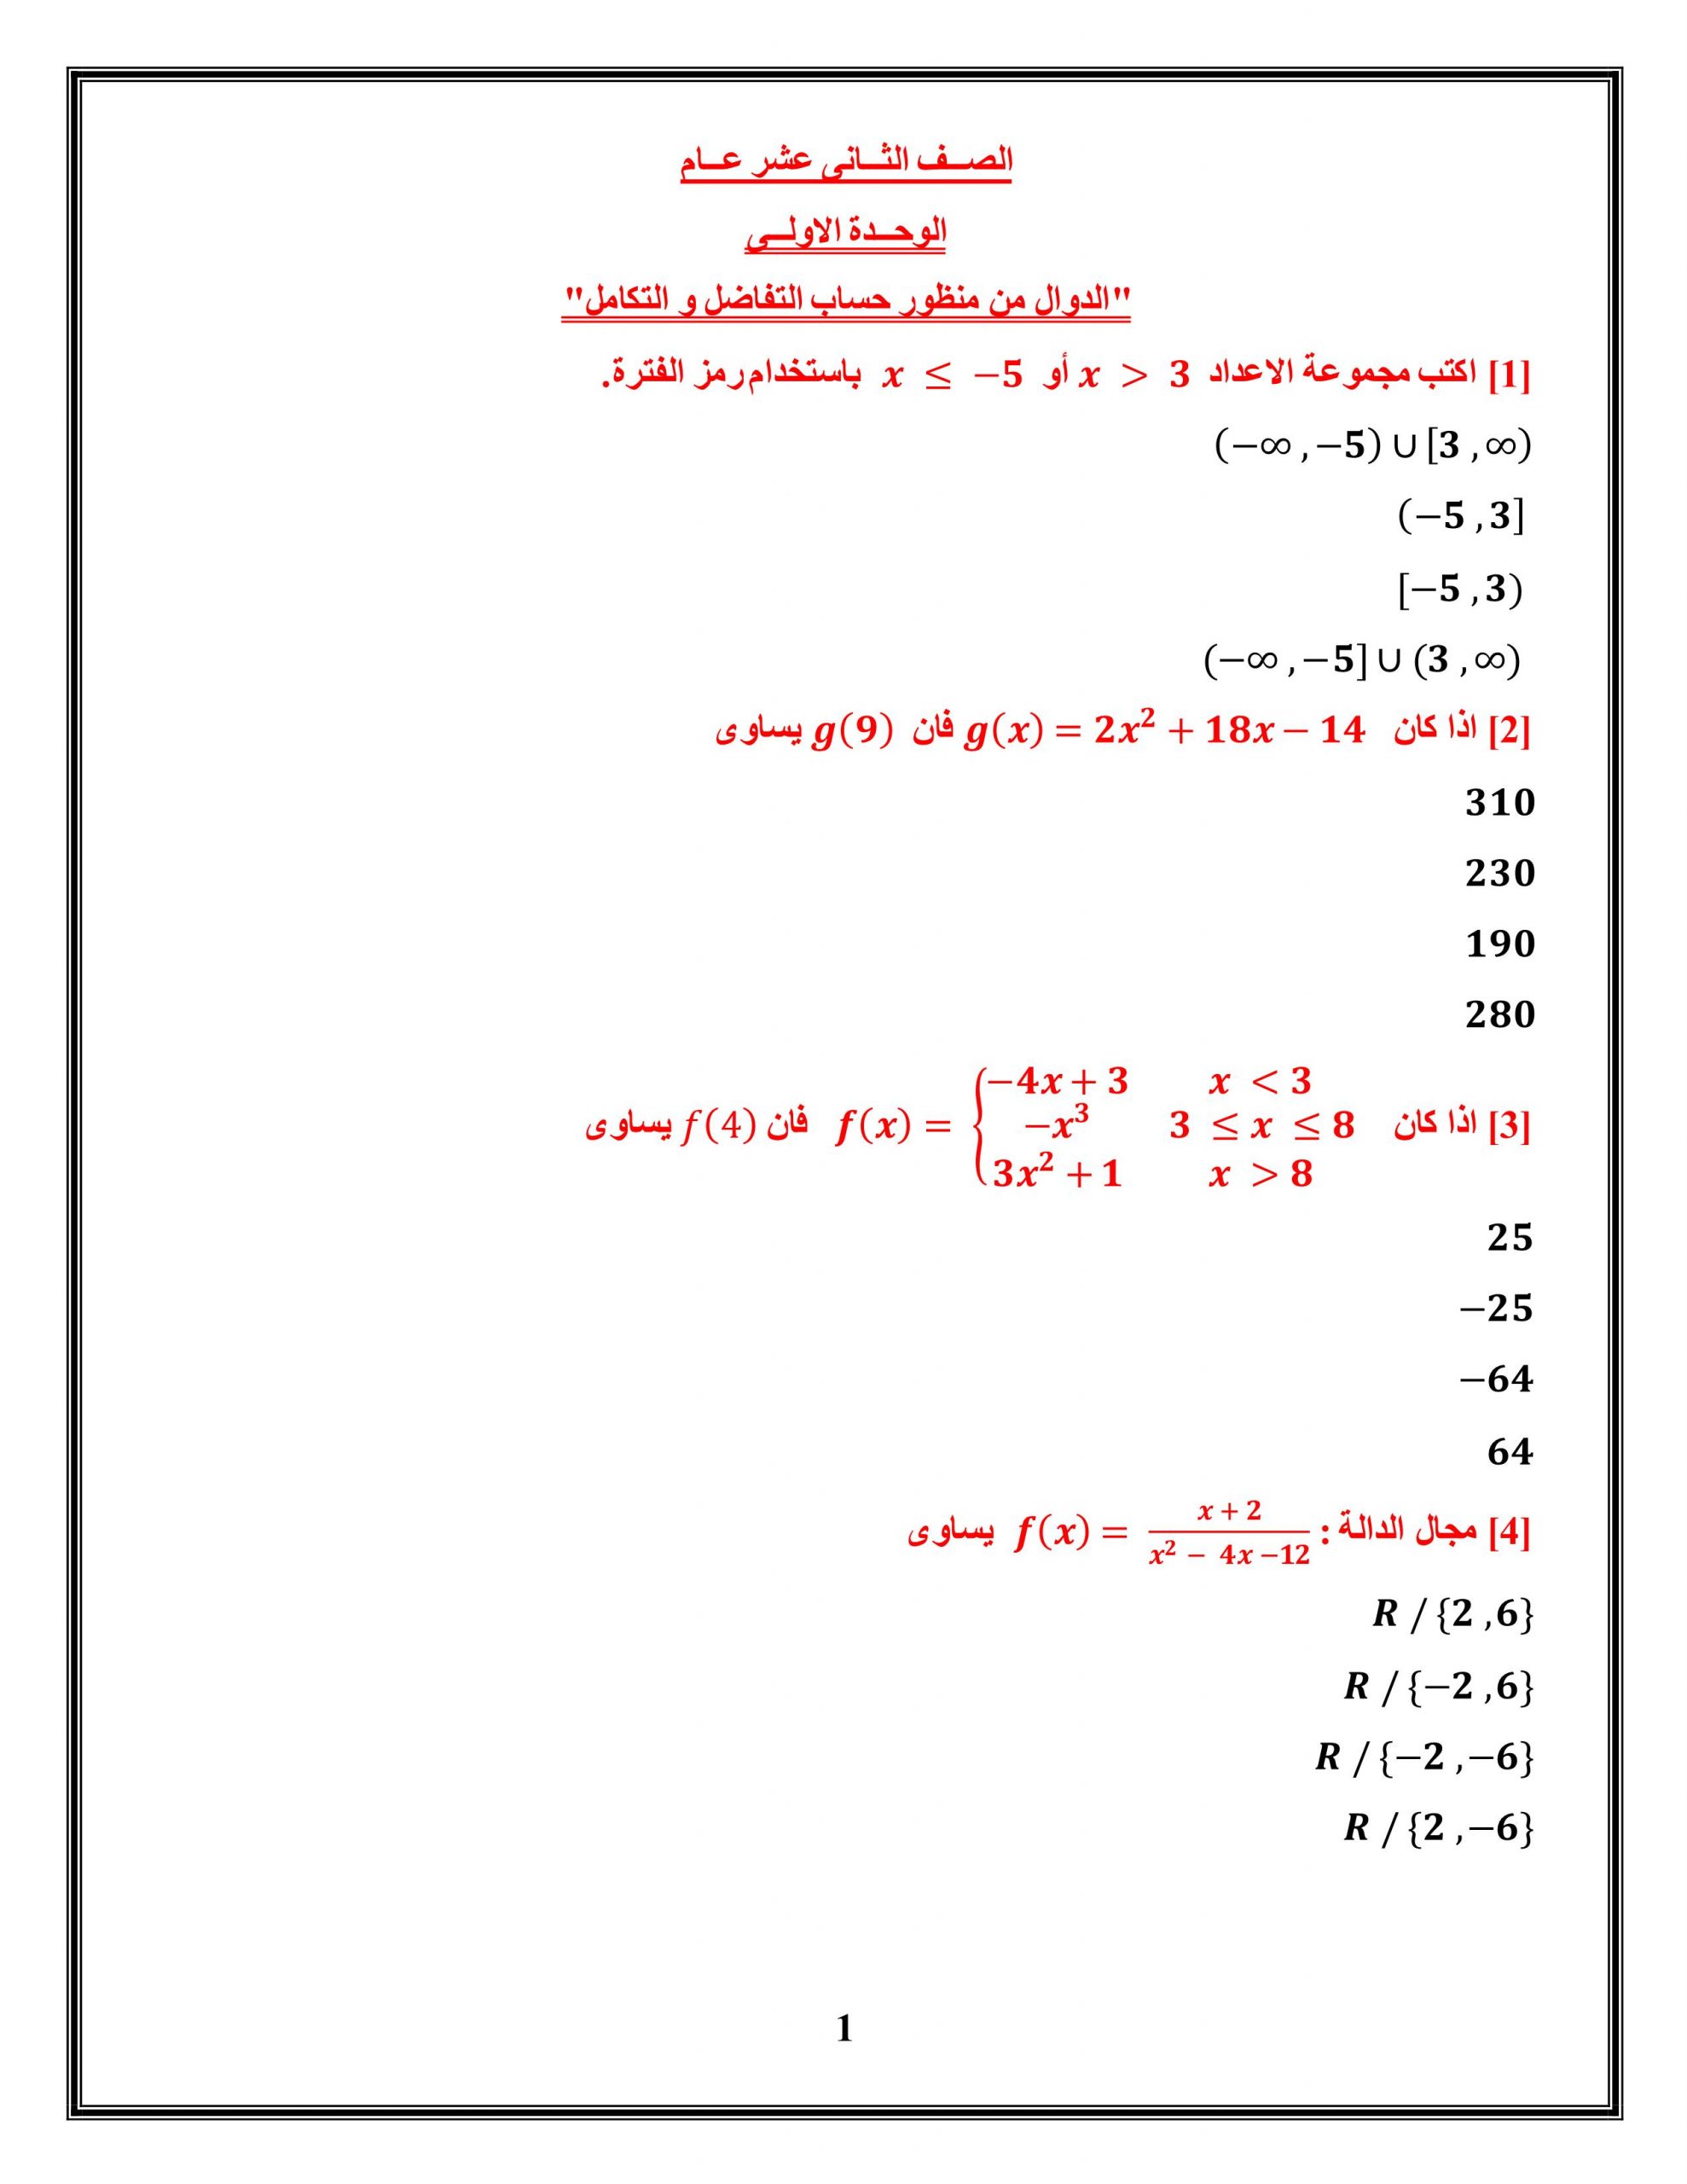 حل اوراق عمل الدوال من منظور حساب التفاضل و التكامل الصف الثاني عشر عام مادة الرياضيات المتكاملة